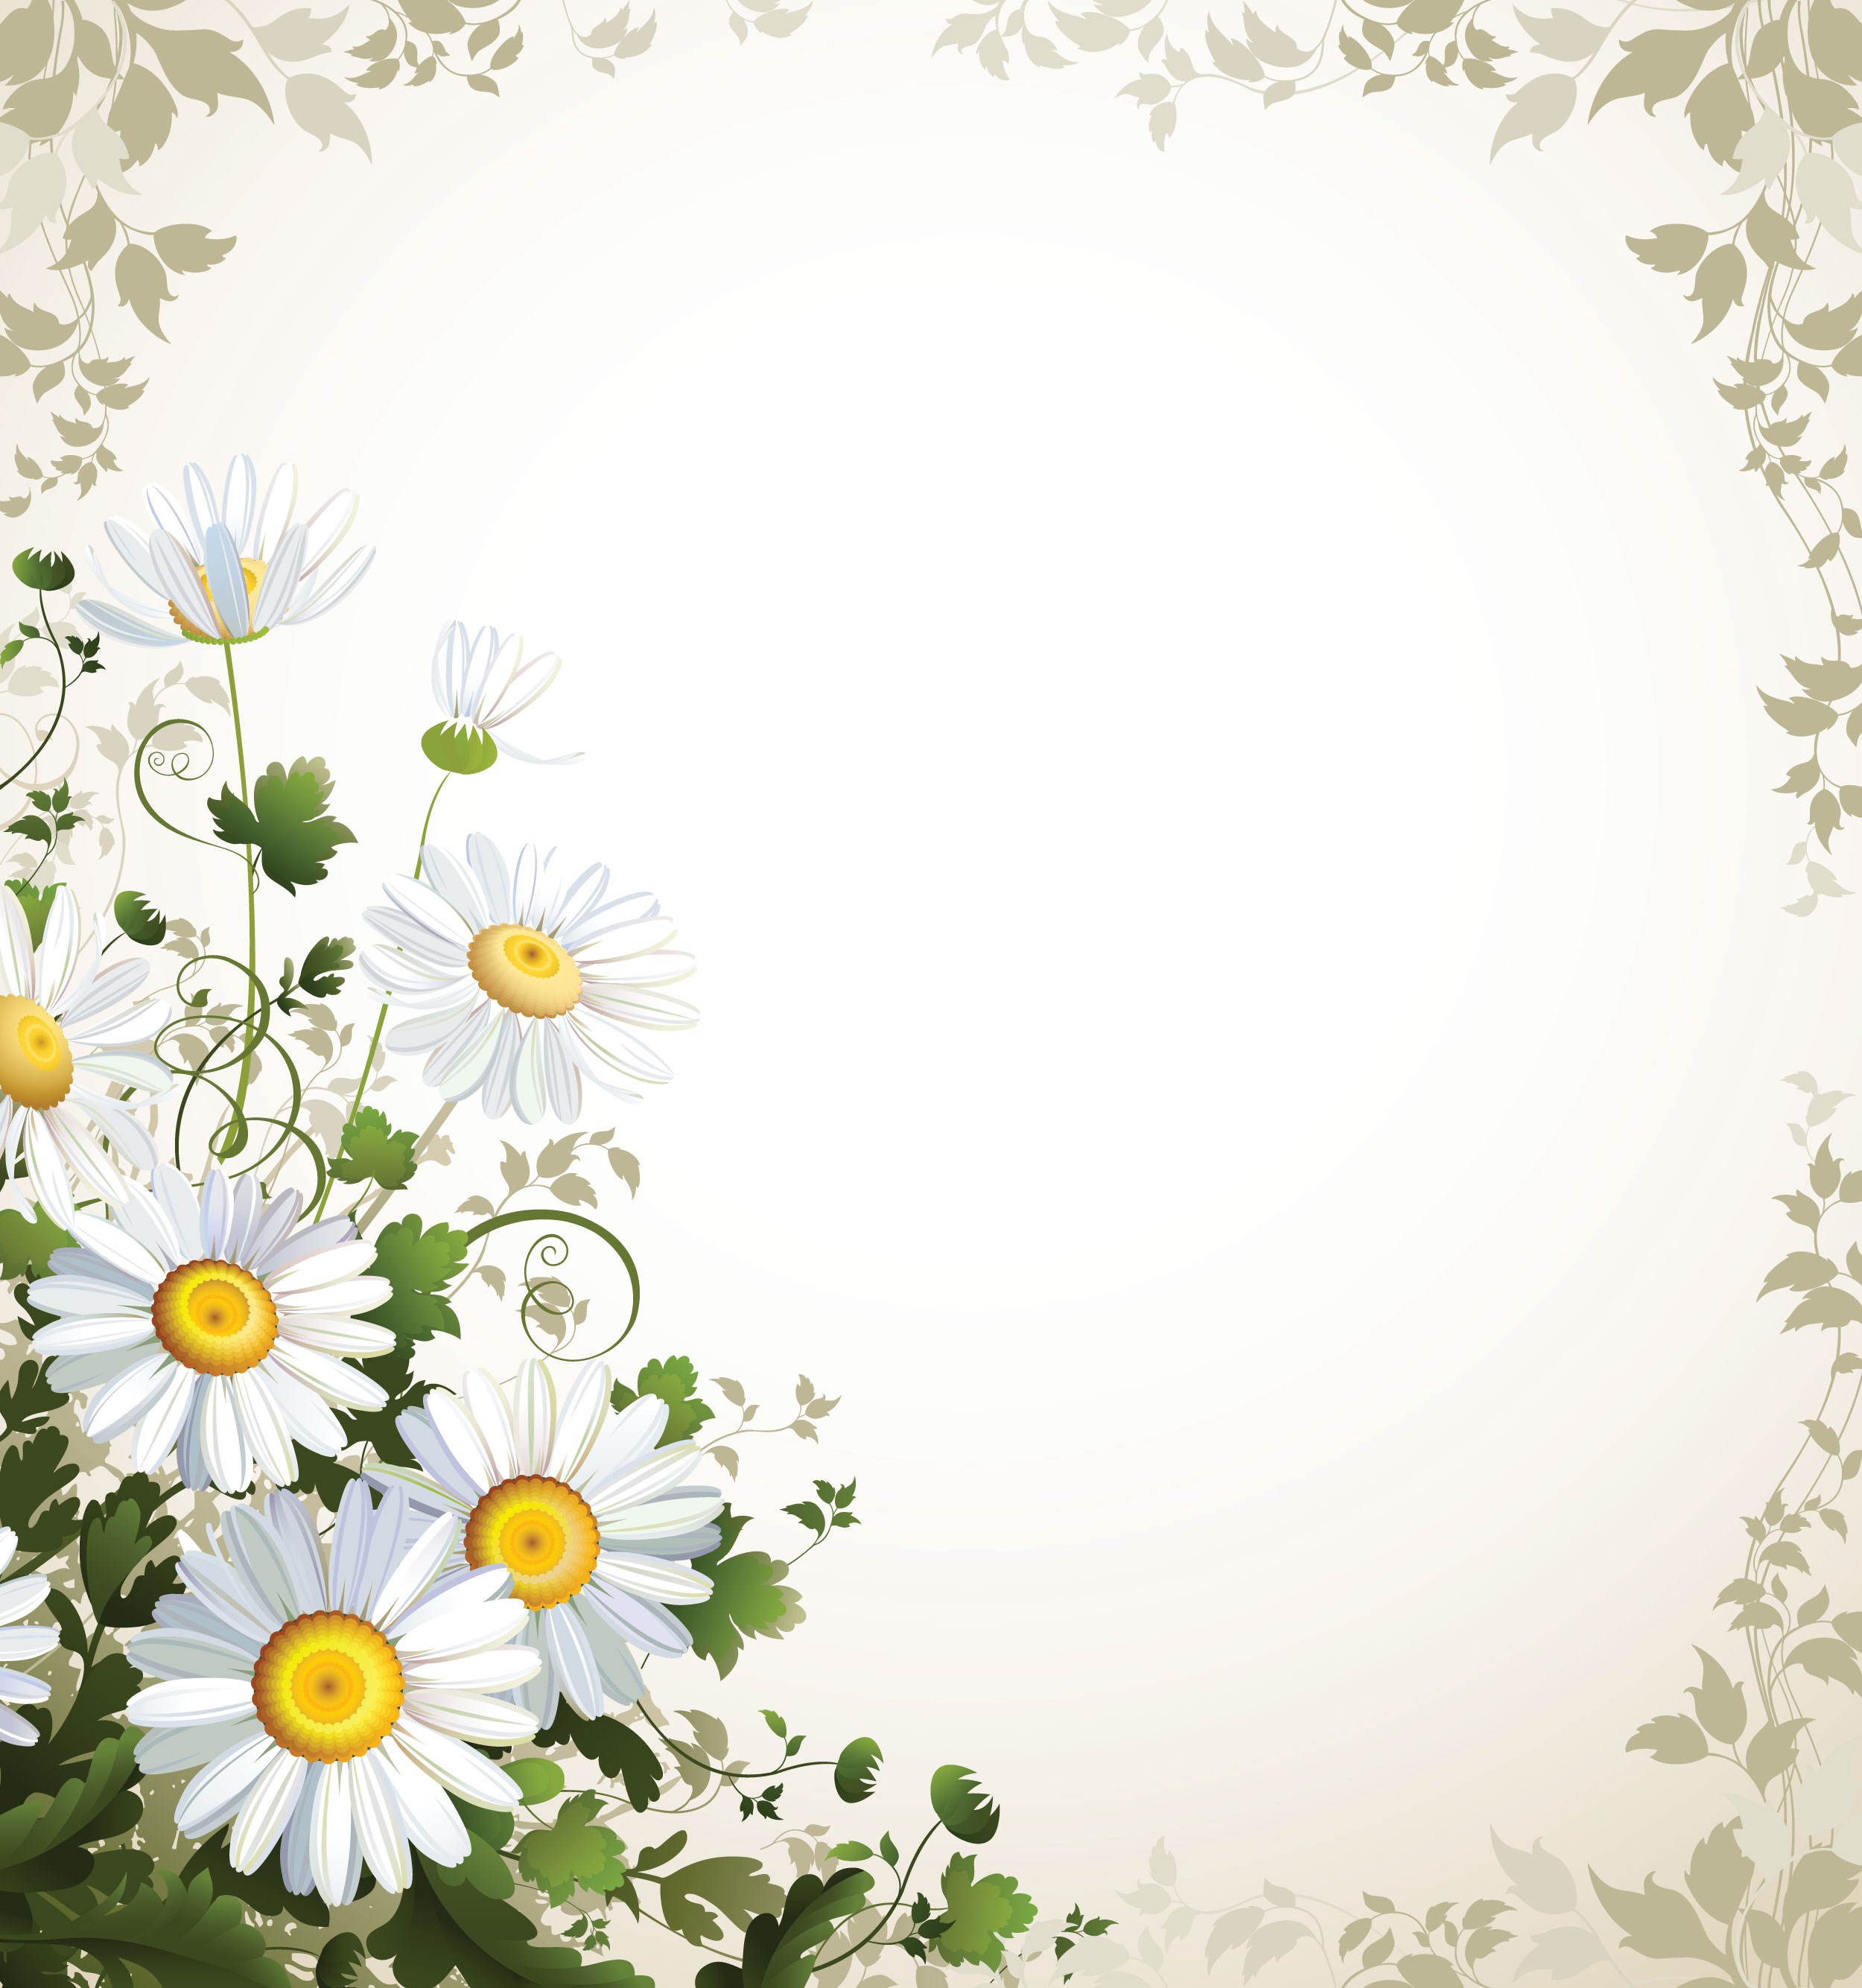 白いの花のイラスト フリー素材 背景 壁紙no 405 白 黄 緑 茎葉枠